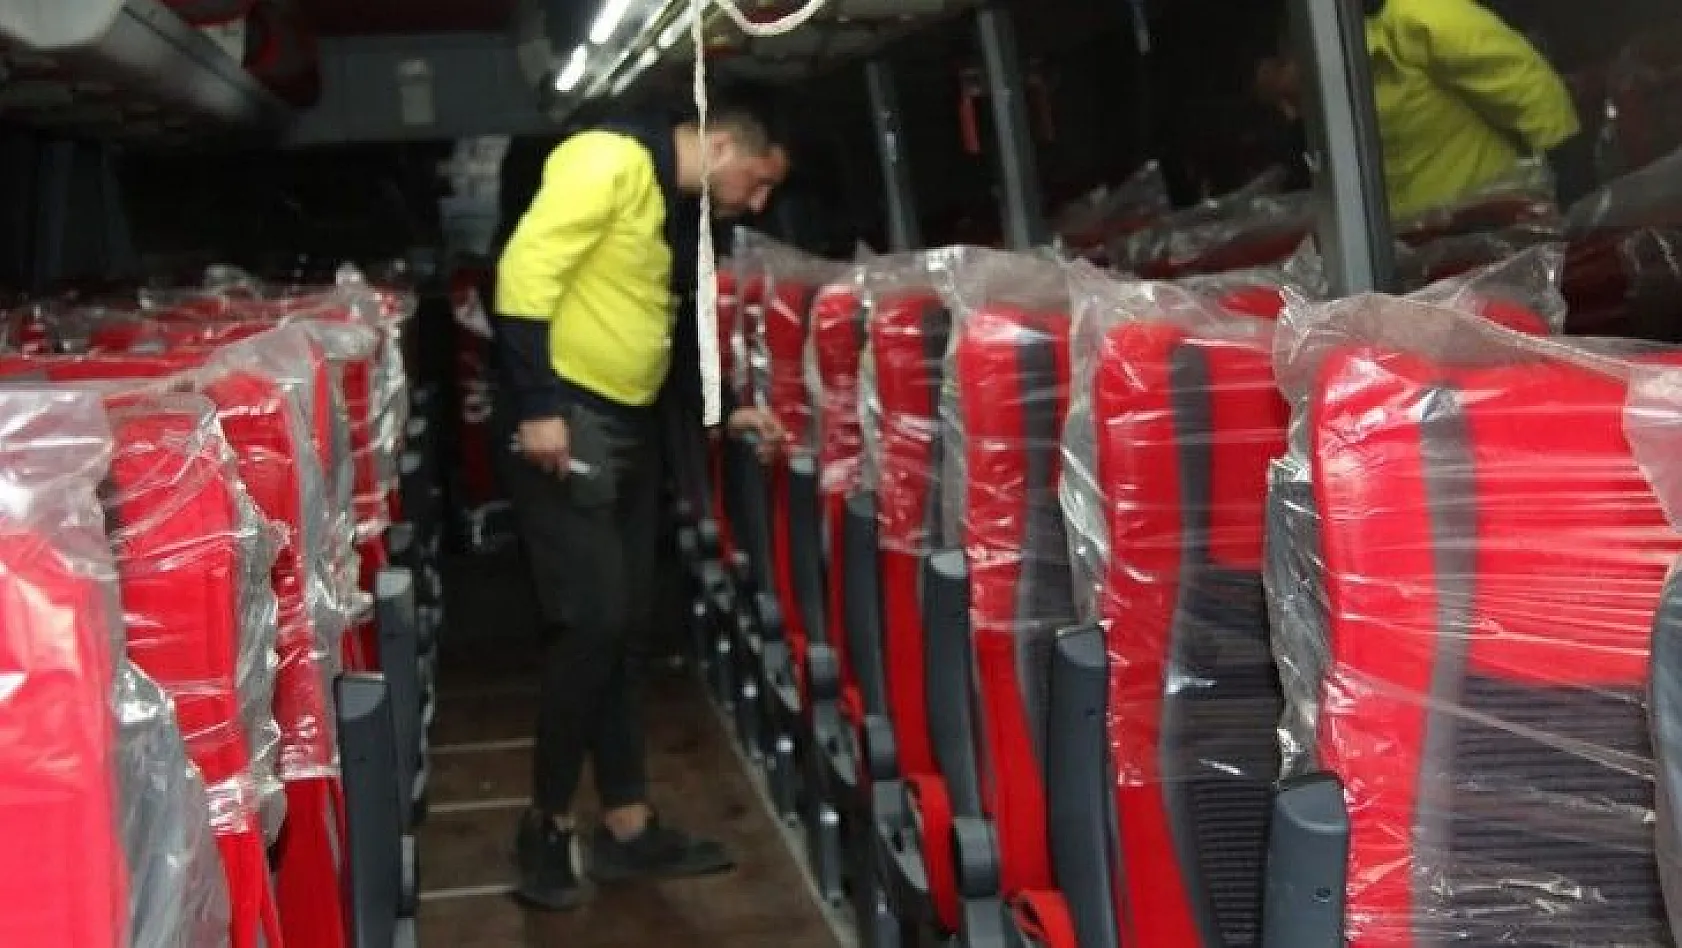 Şehirlerarası yolcu taşıyan otobüslere Covid-19 ayarı